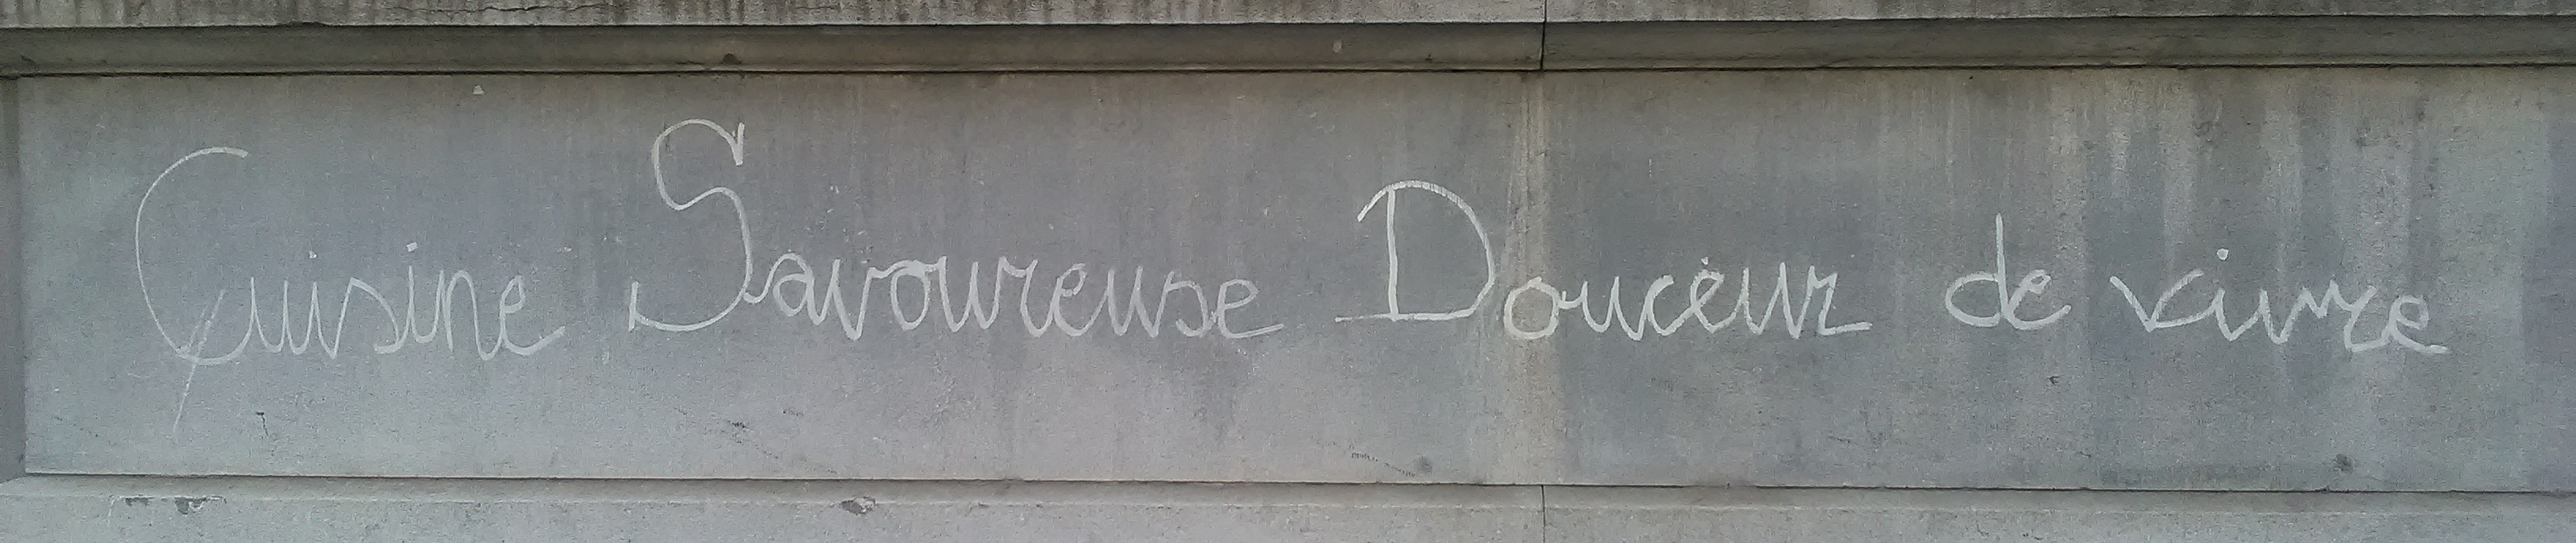 Une photo d'un beau graffiti sur un mur à Rotterdam, disant « Cuisine Savoureuse Douceur de Vivre »